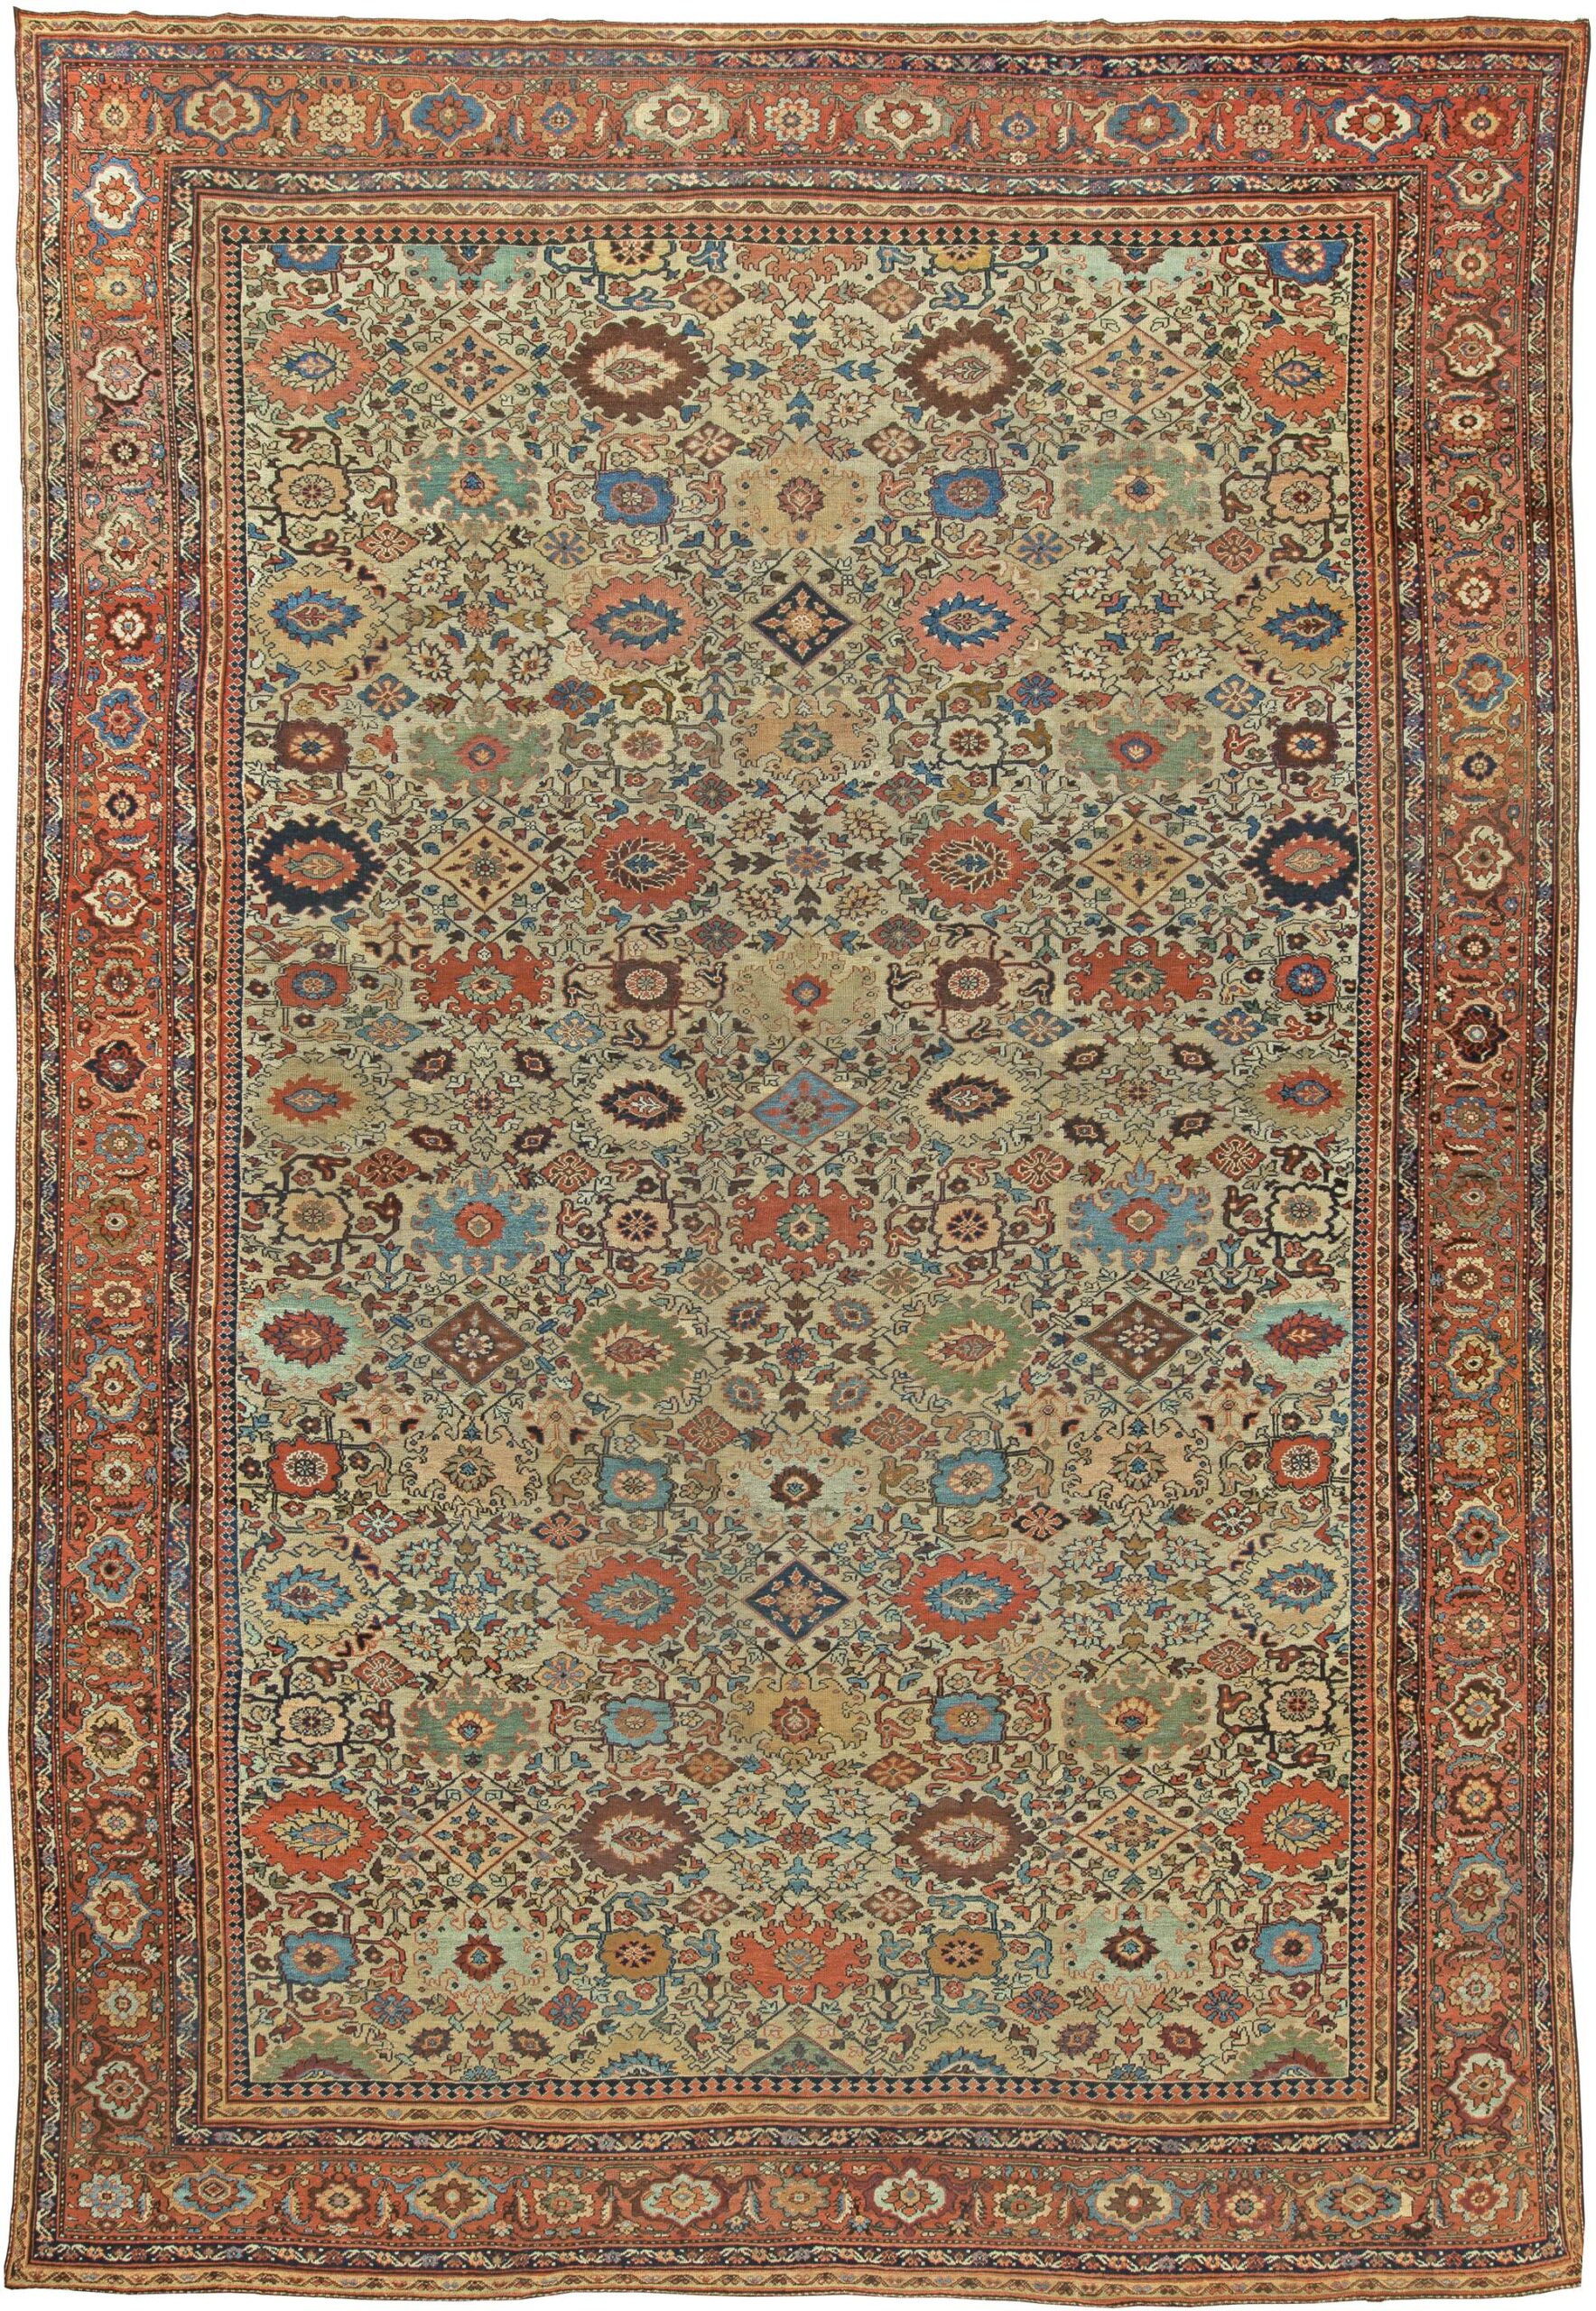 antique rugs: sultanabad antique rug UESBDFQ